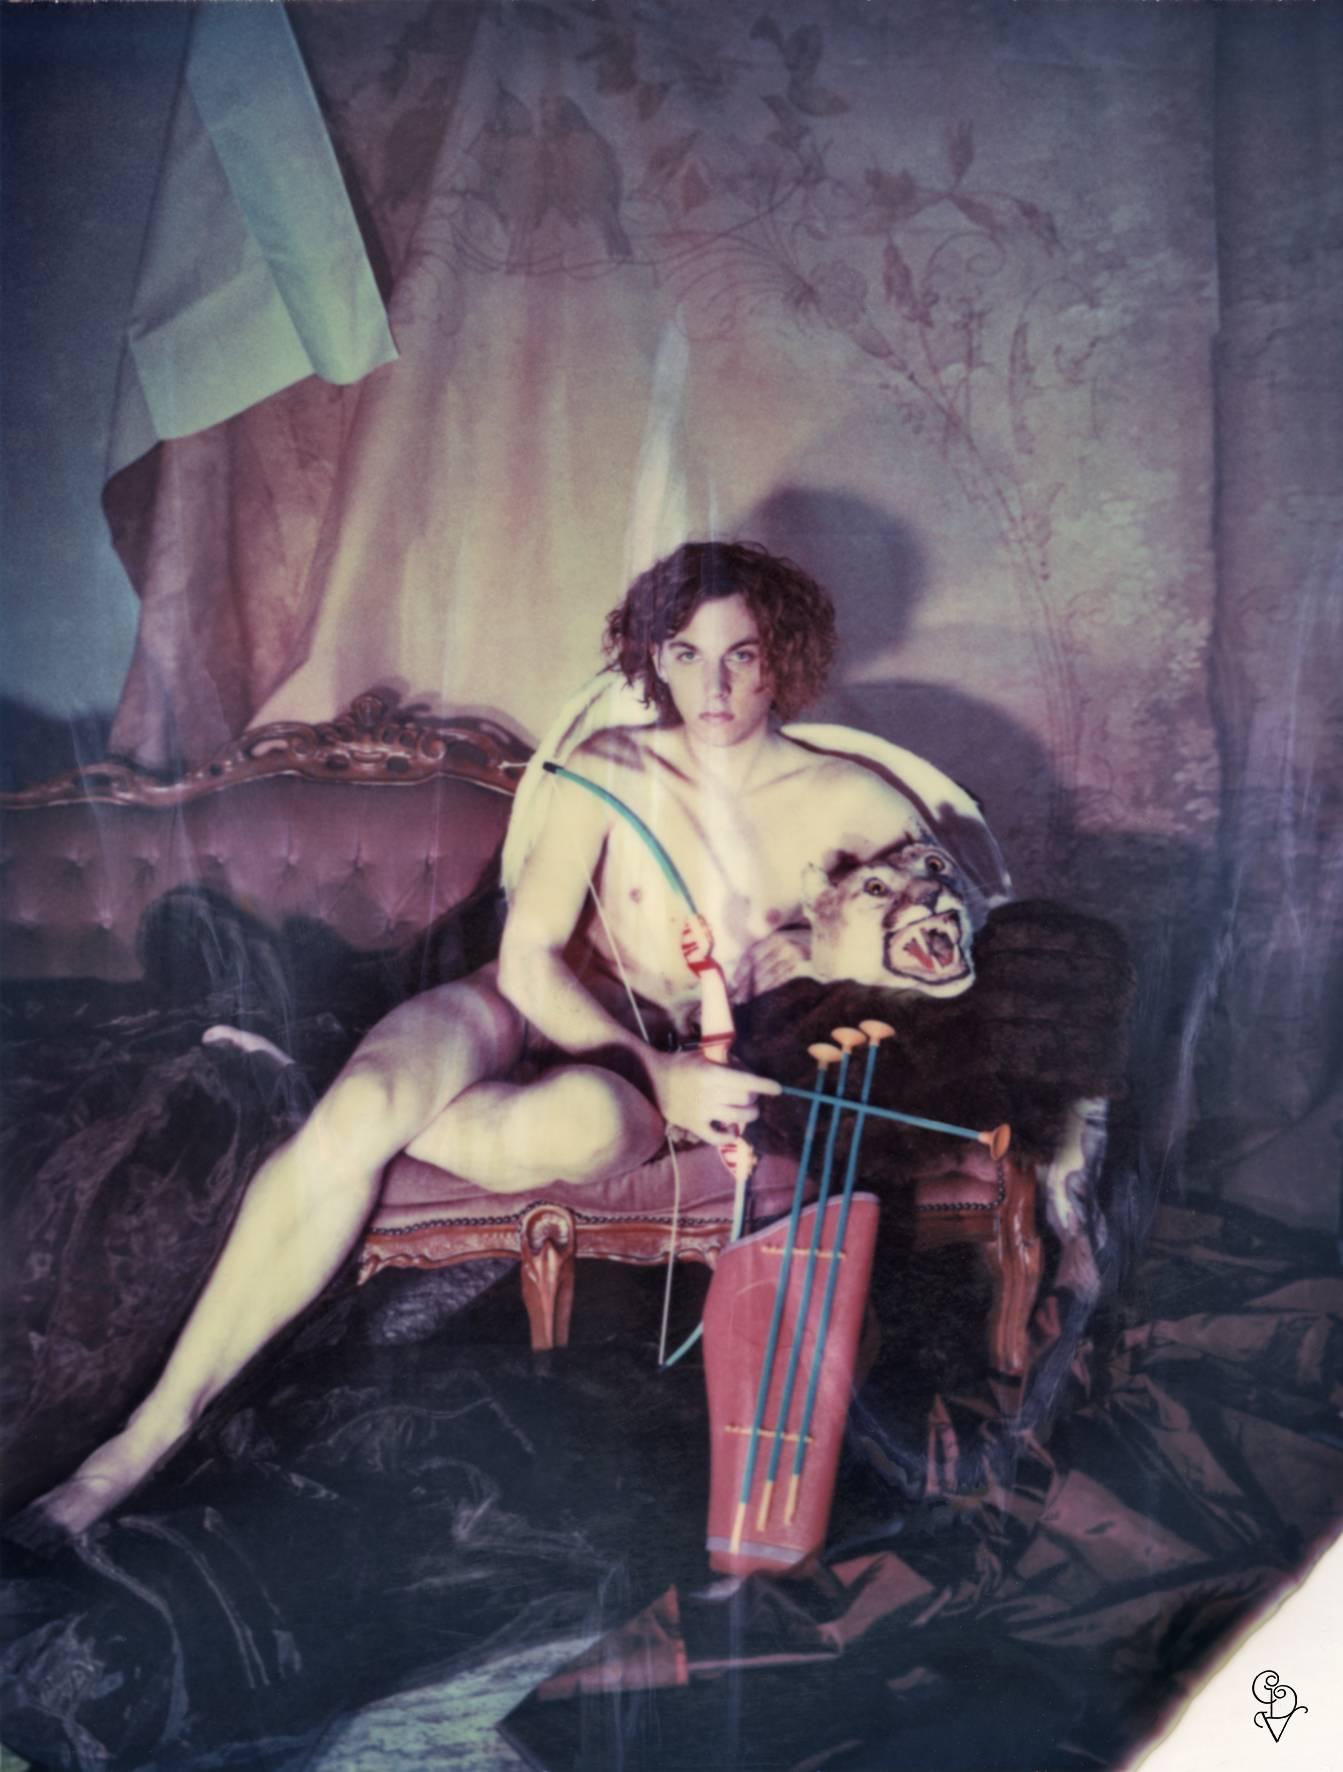 Carmen de Vos Nude Photograph – The Hunter (Erzählungen von Hunter)